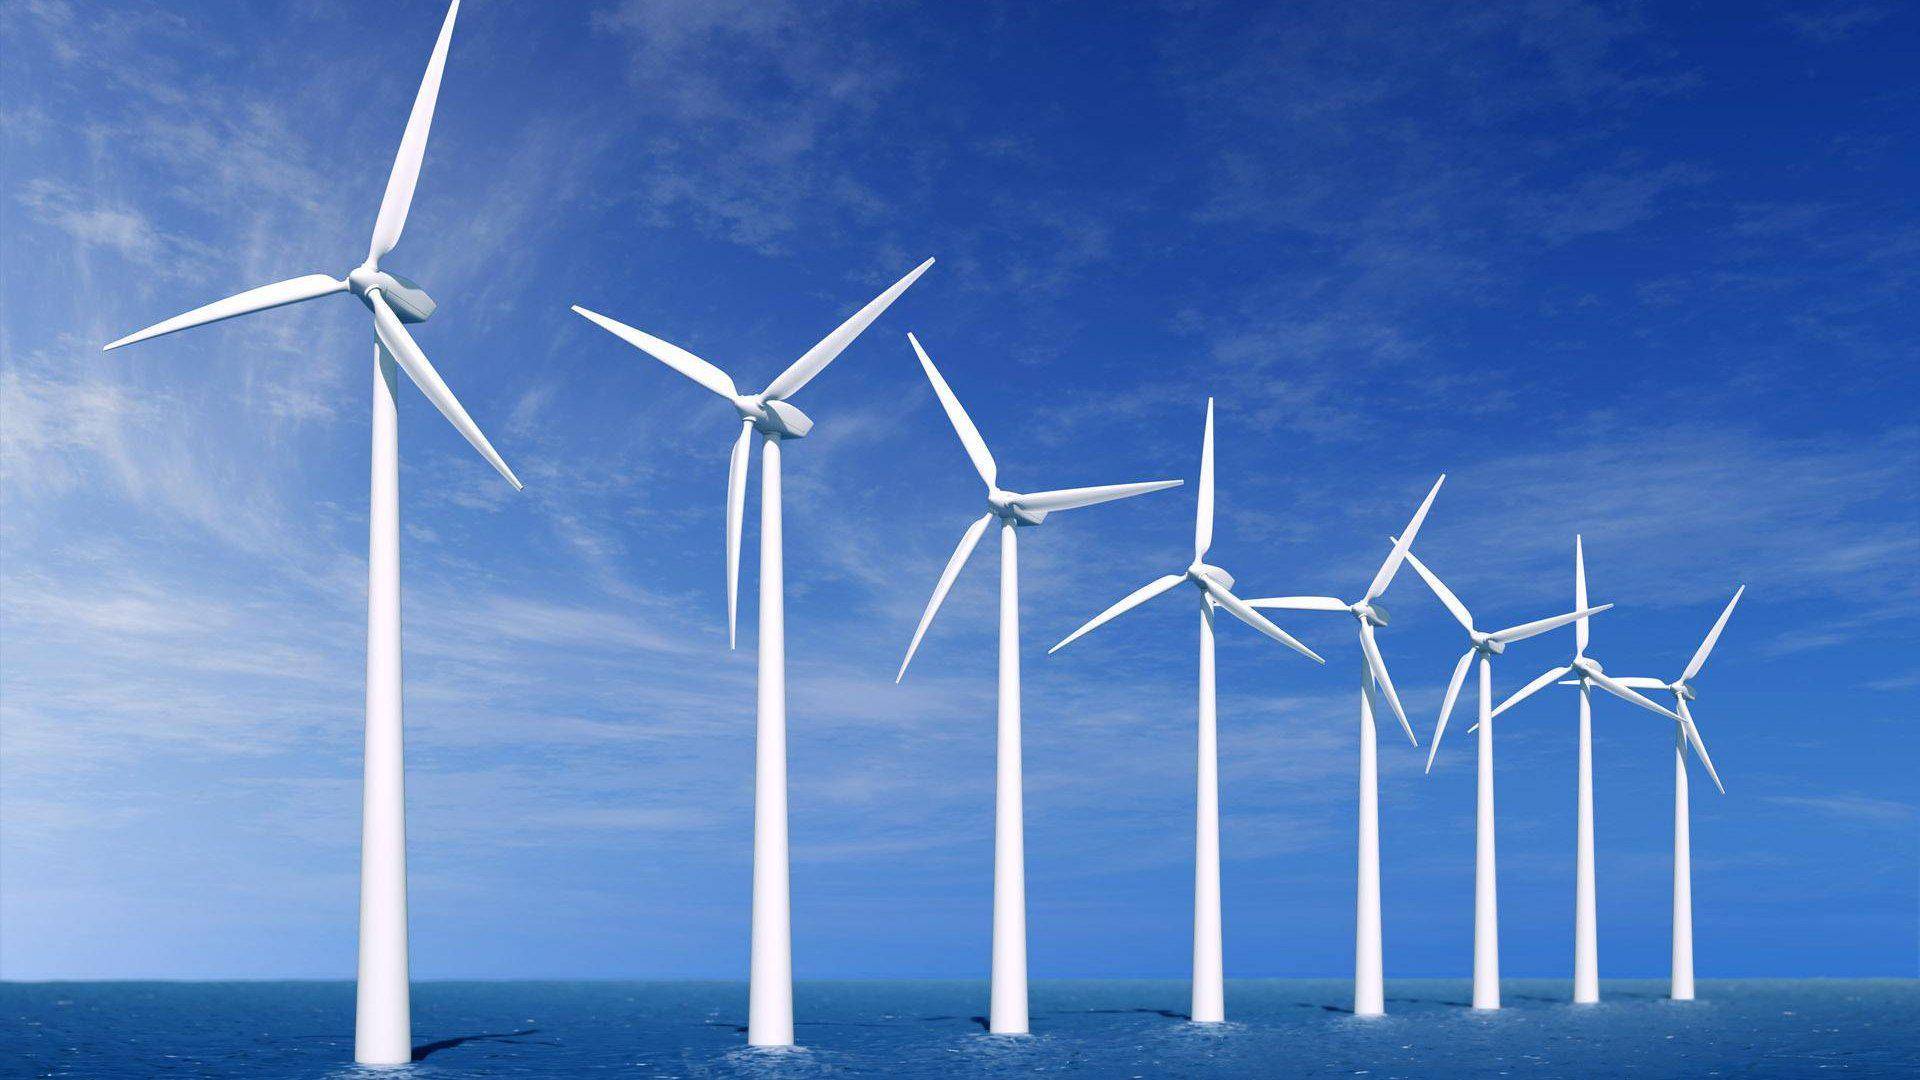 德國海上風電裝機量大幅下滑 2030年產能目標恐難實現